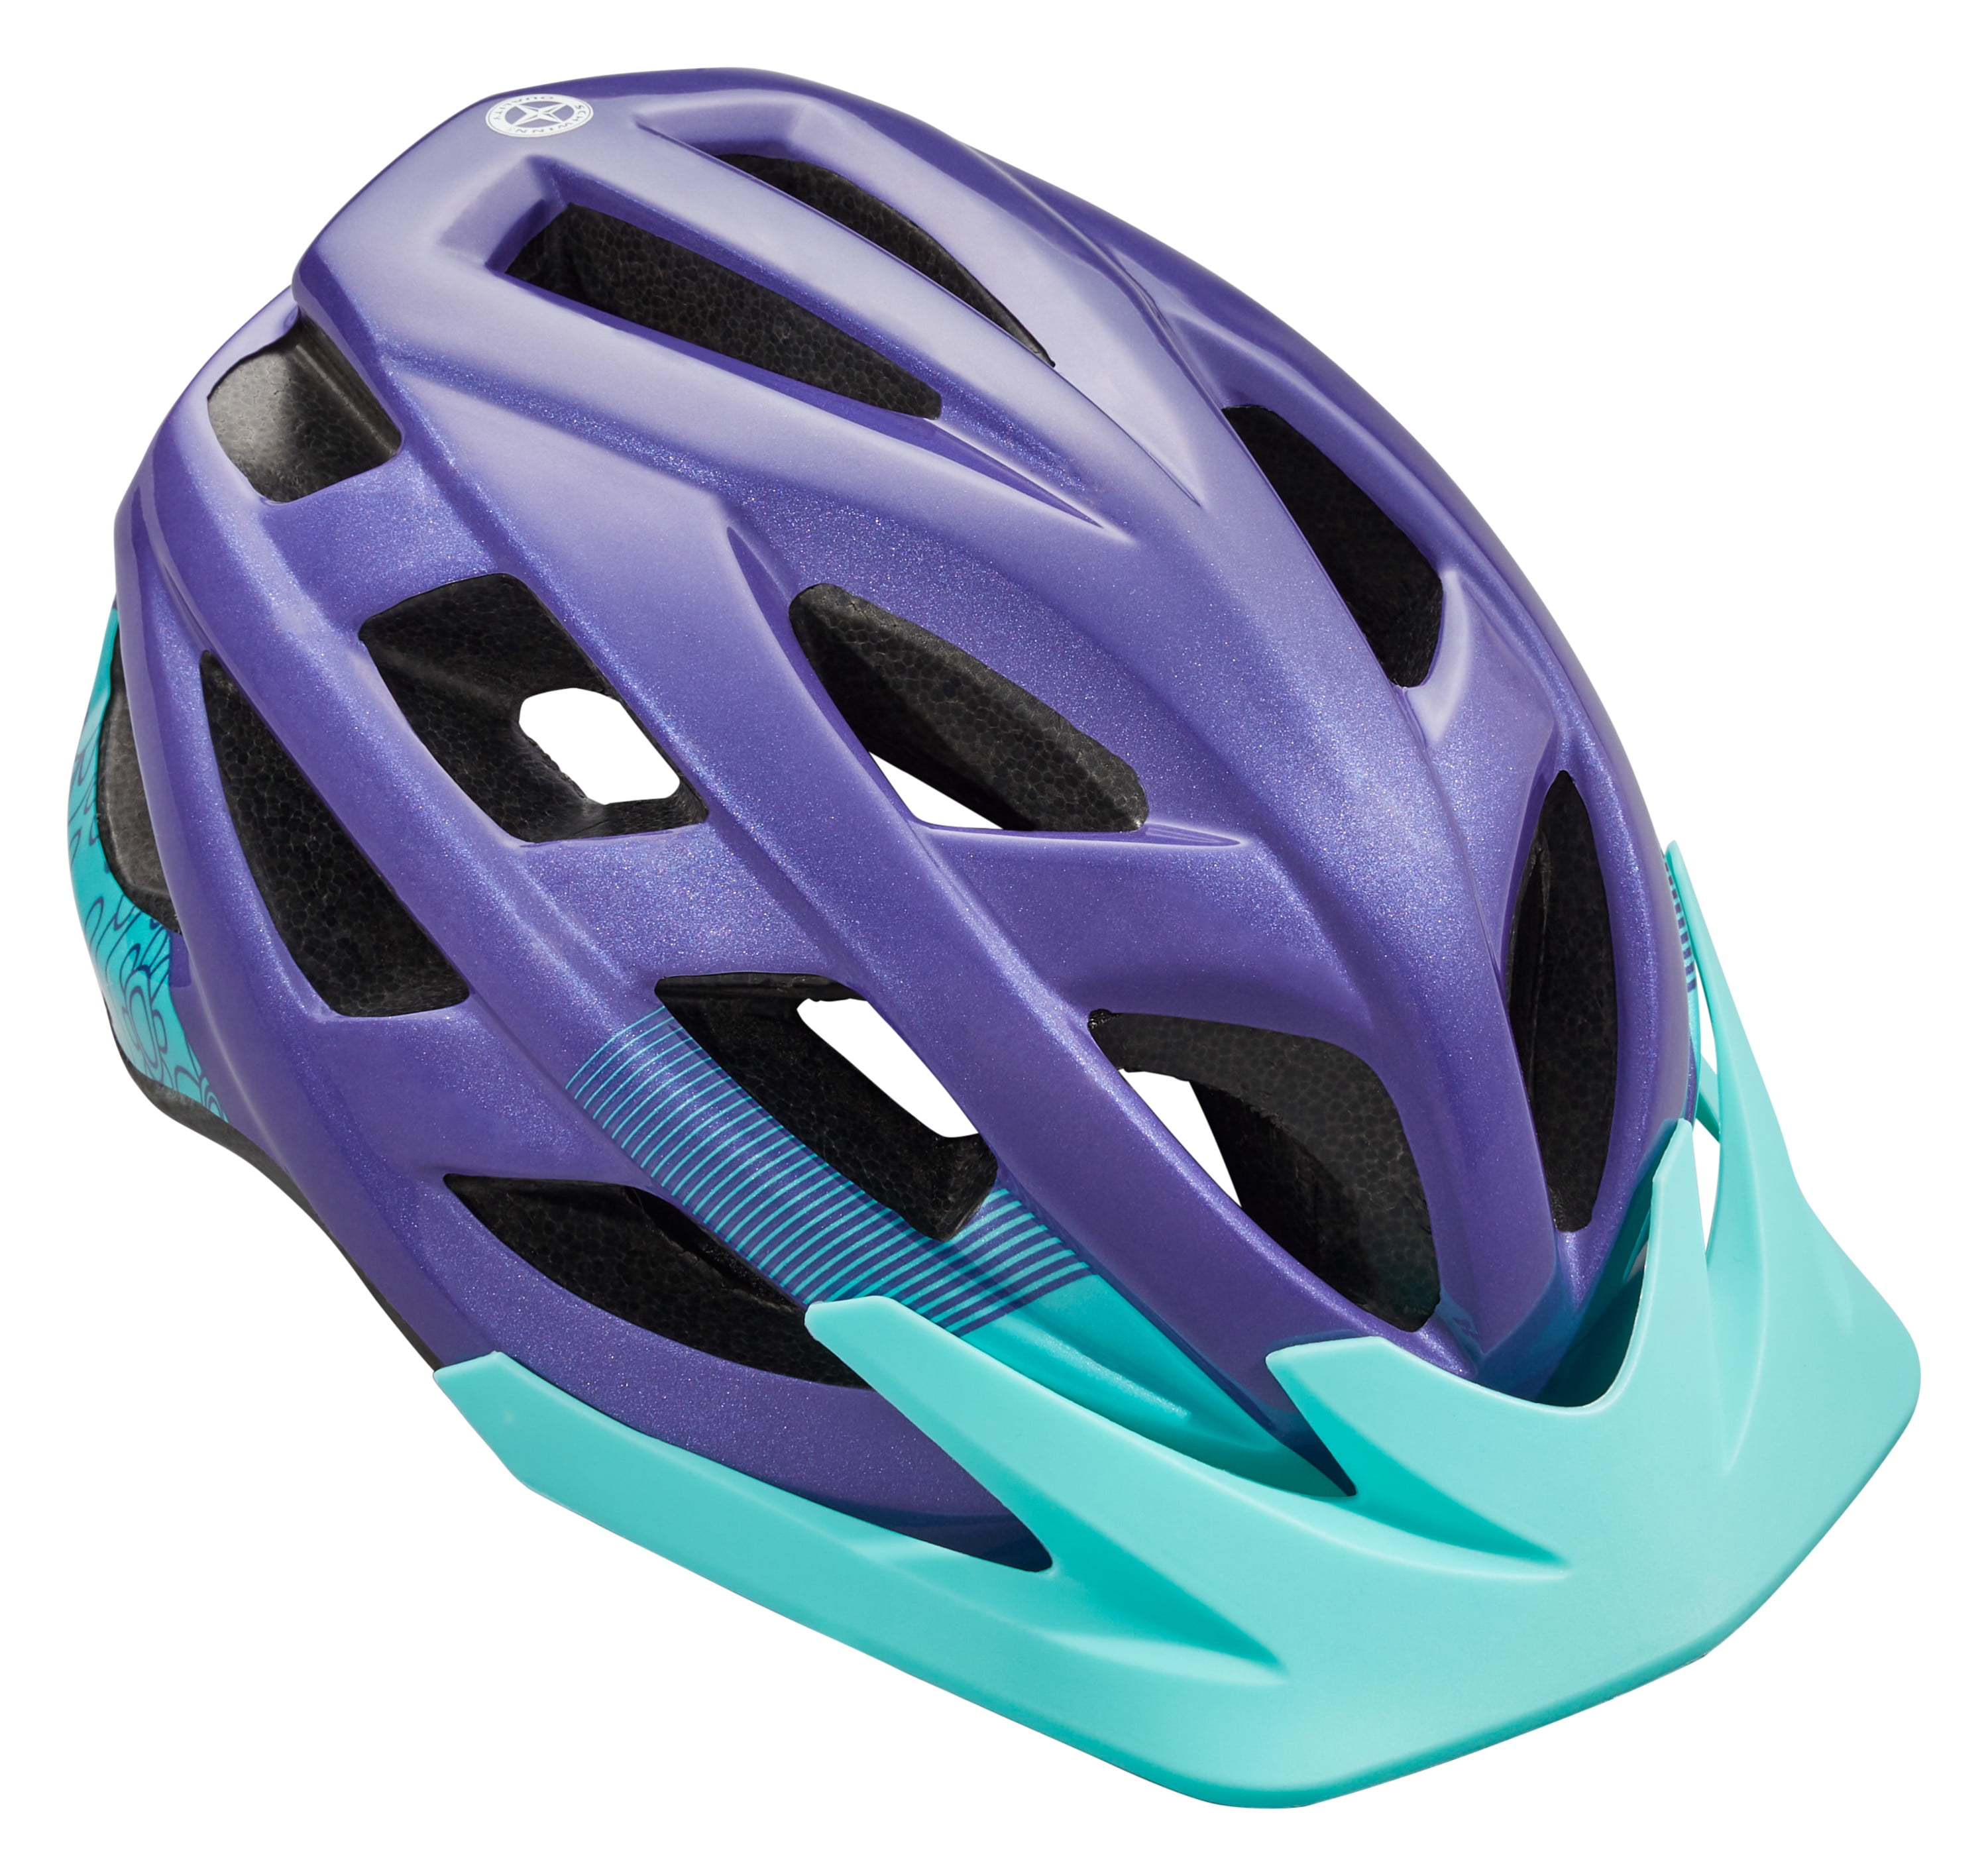 NEW Schwinn Kids' Bike Helmet Blue/Purple Classic Stars Child Ages 5-8 